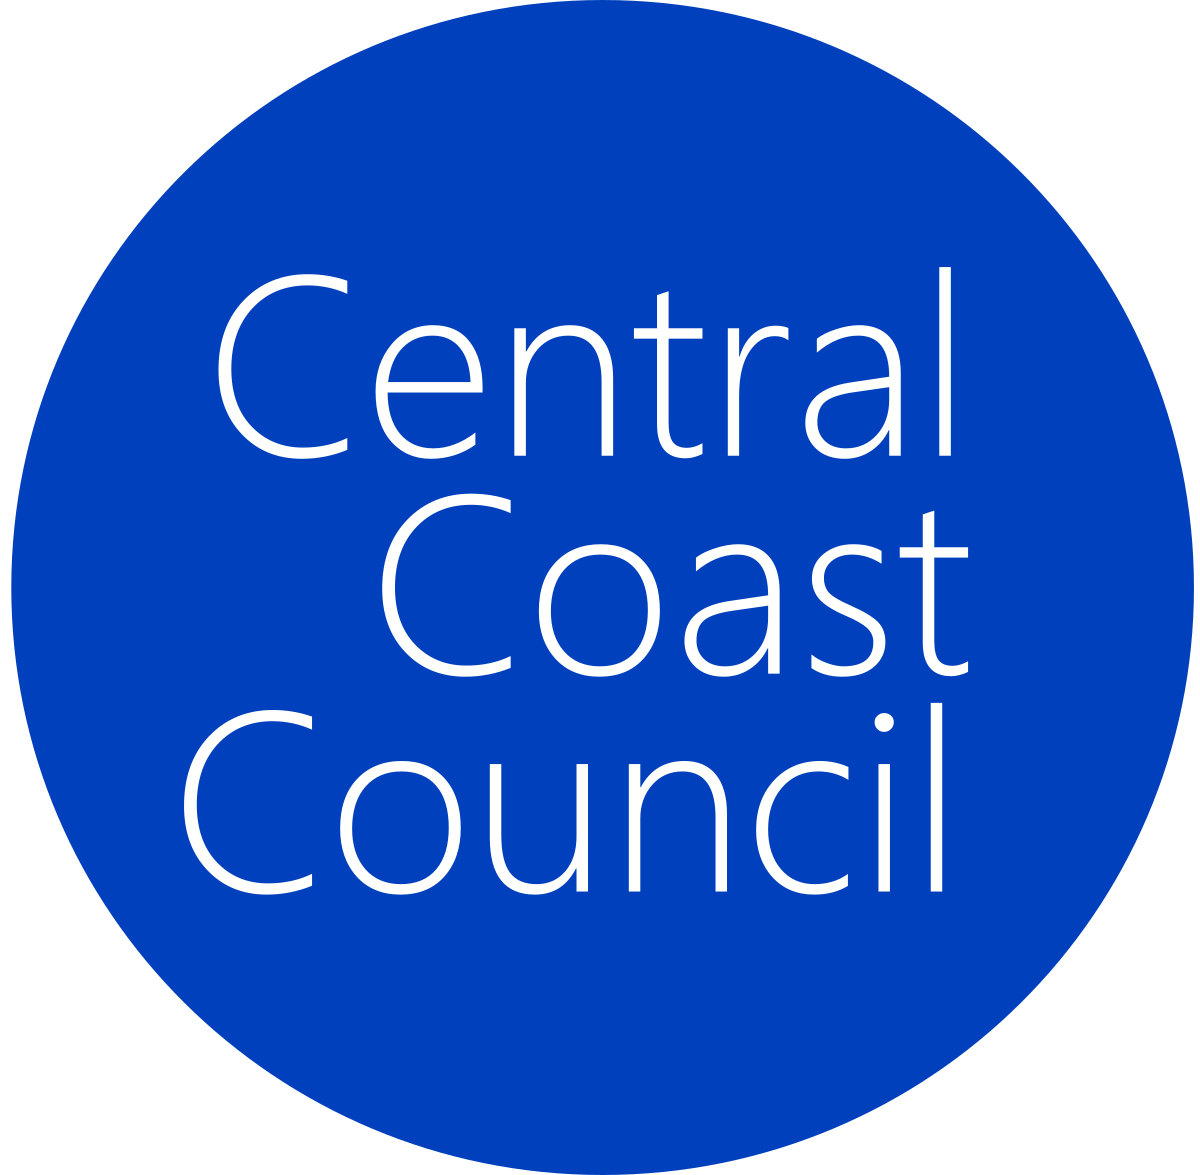 Central_Coast_Council_logo